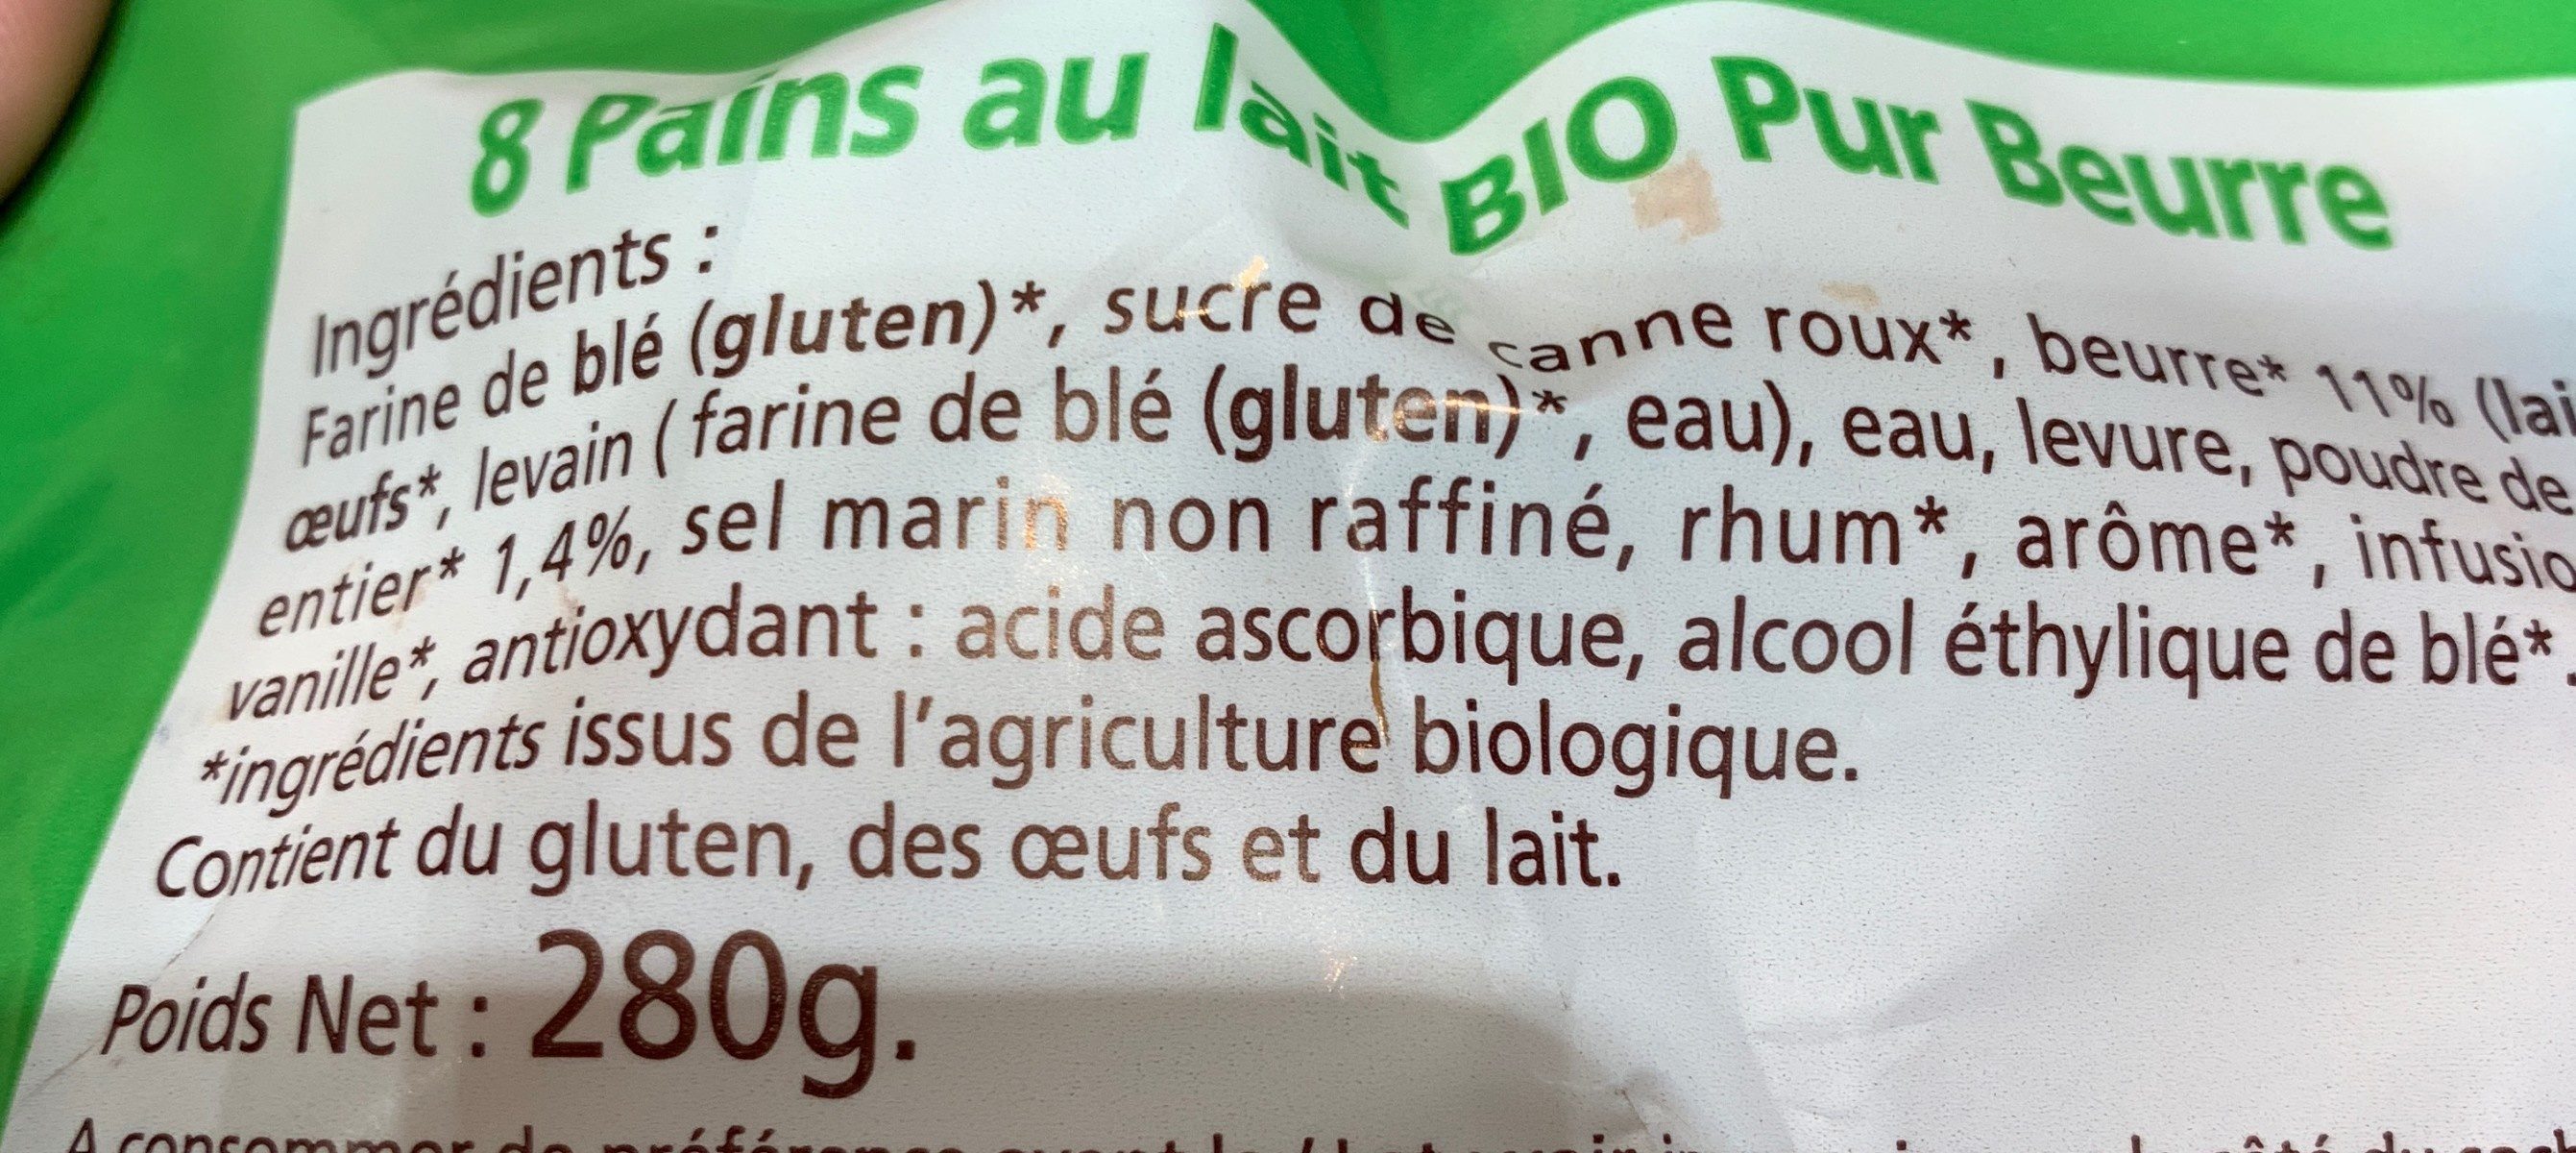 Pains au lait pur beurre Bio - Ingredientes - fr